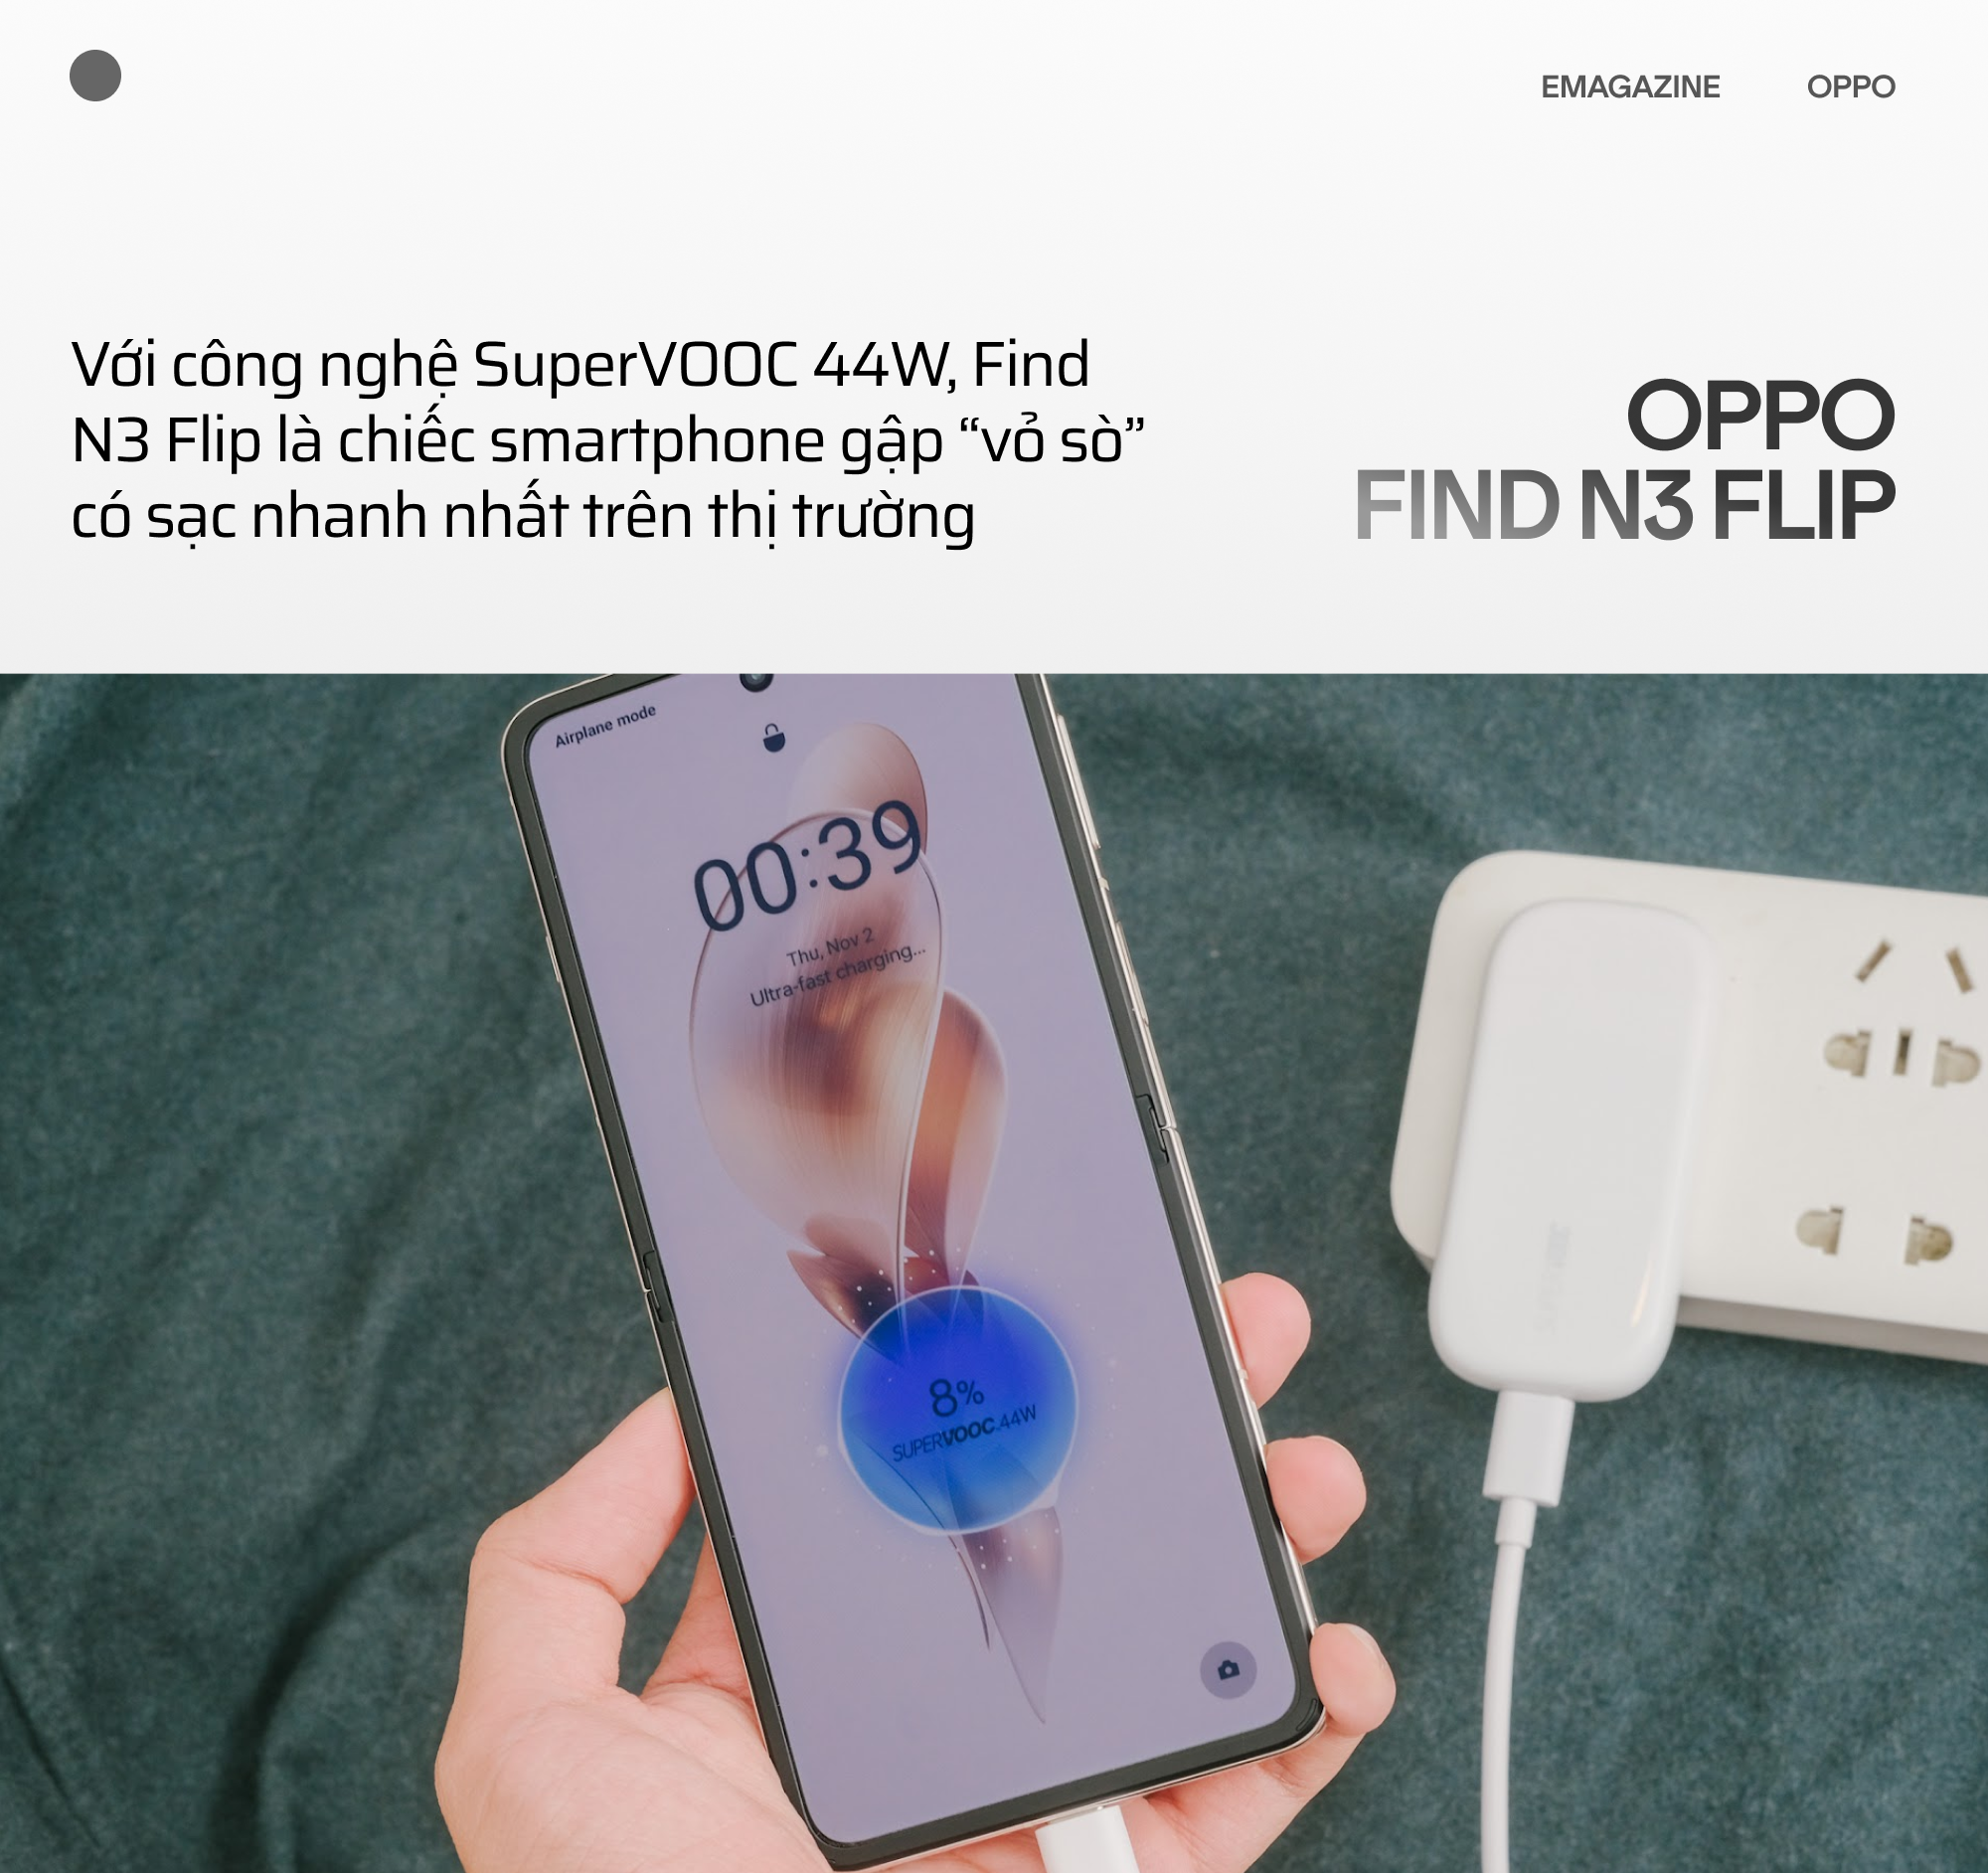 OPPO Find N3 Flip và hành trình đi tìm chiếc smartphone gập toàn diện - Ảnh 29.